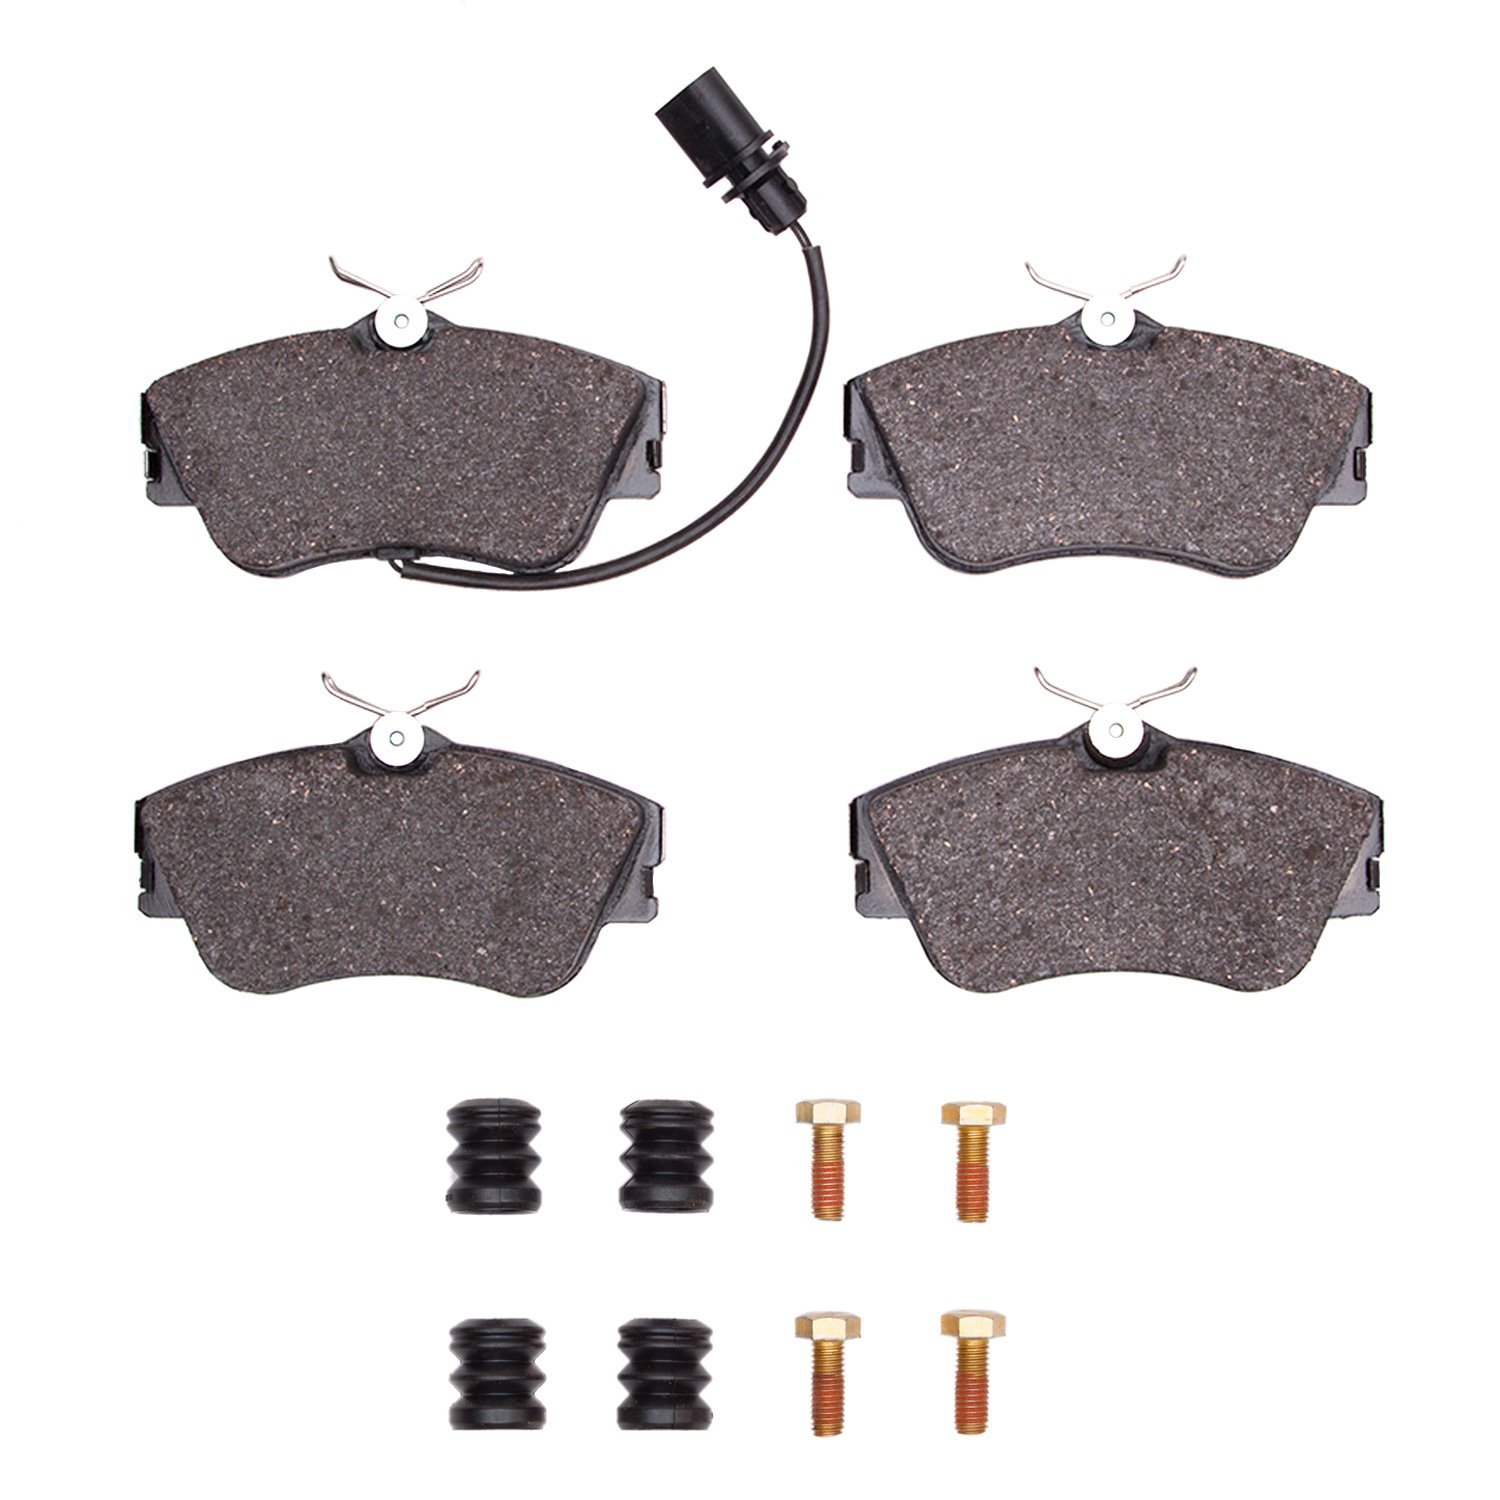 1311-0638-11 3000-Series Semi-Metallic Brake Pads & Hardware Kit, 2000-2000 Audi/Volkswagen, Position: Front